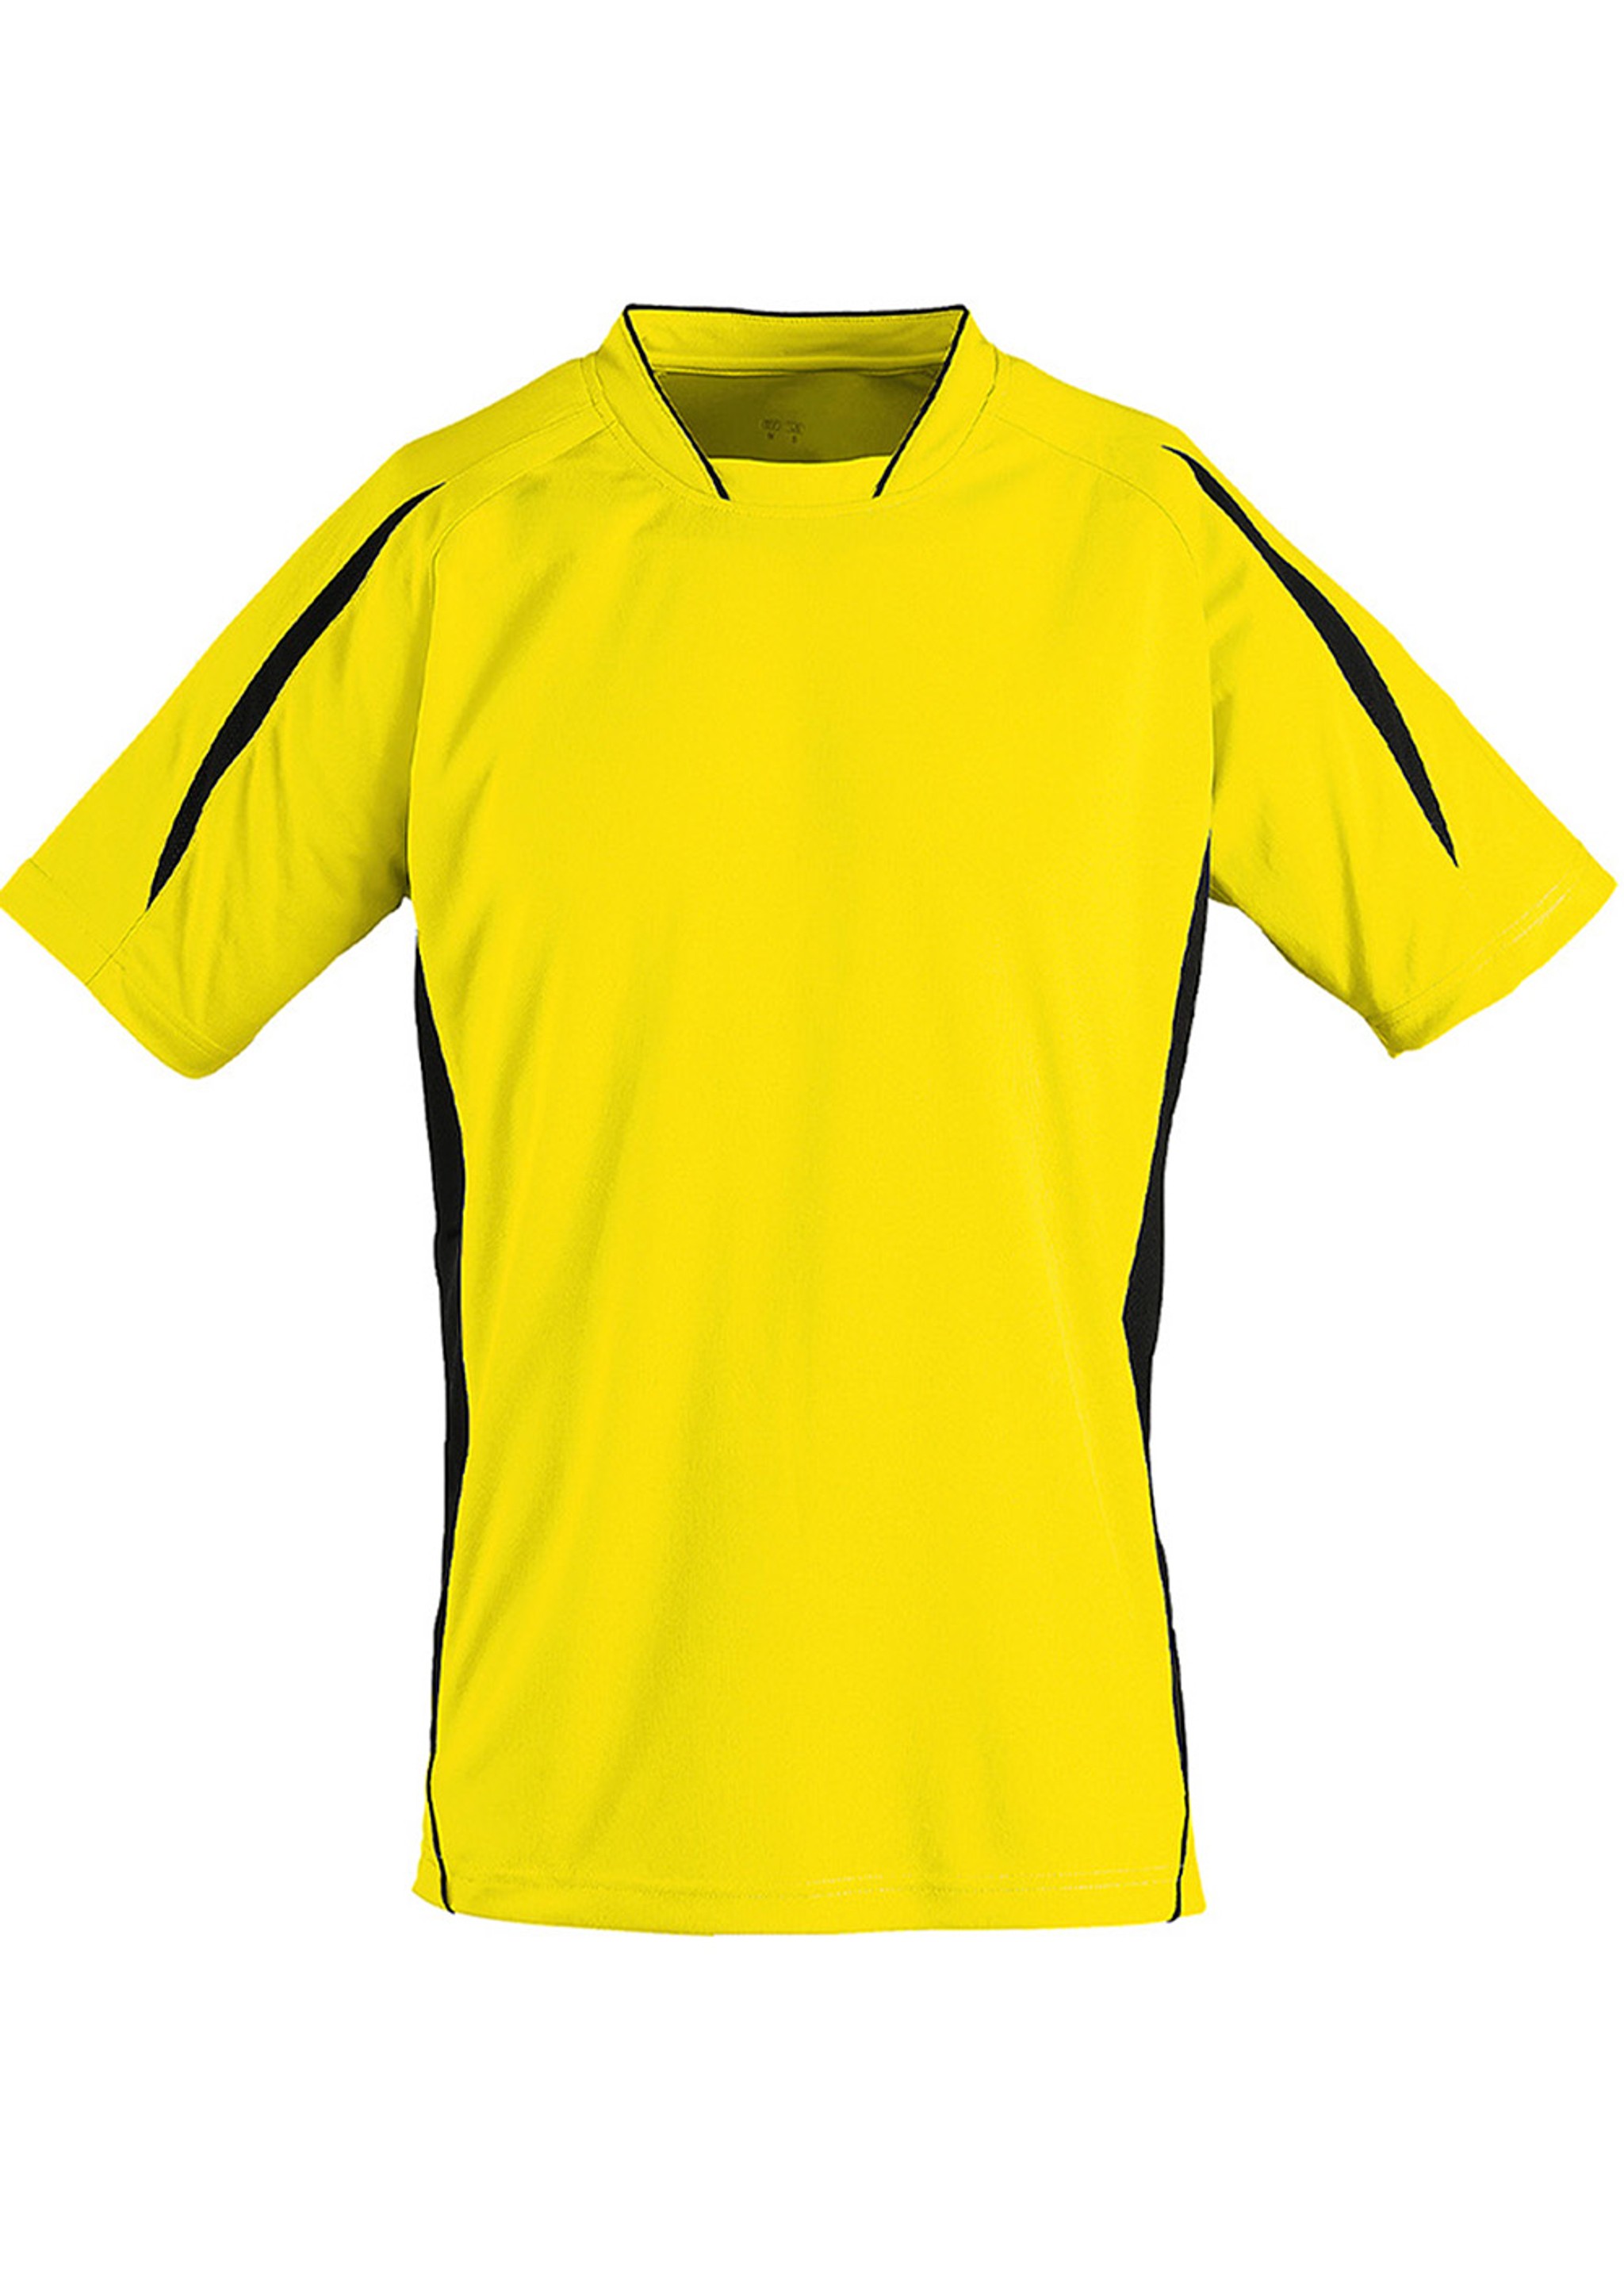 Basic Sport Shirt Lemon/Black